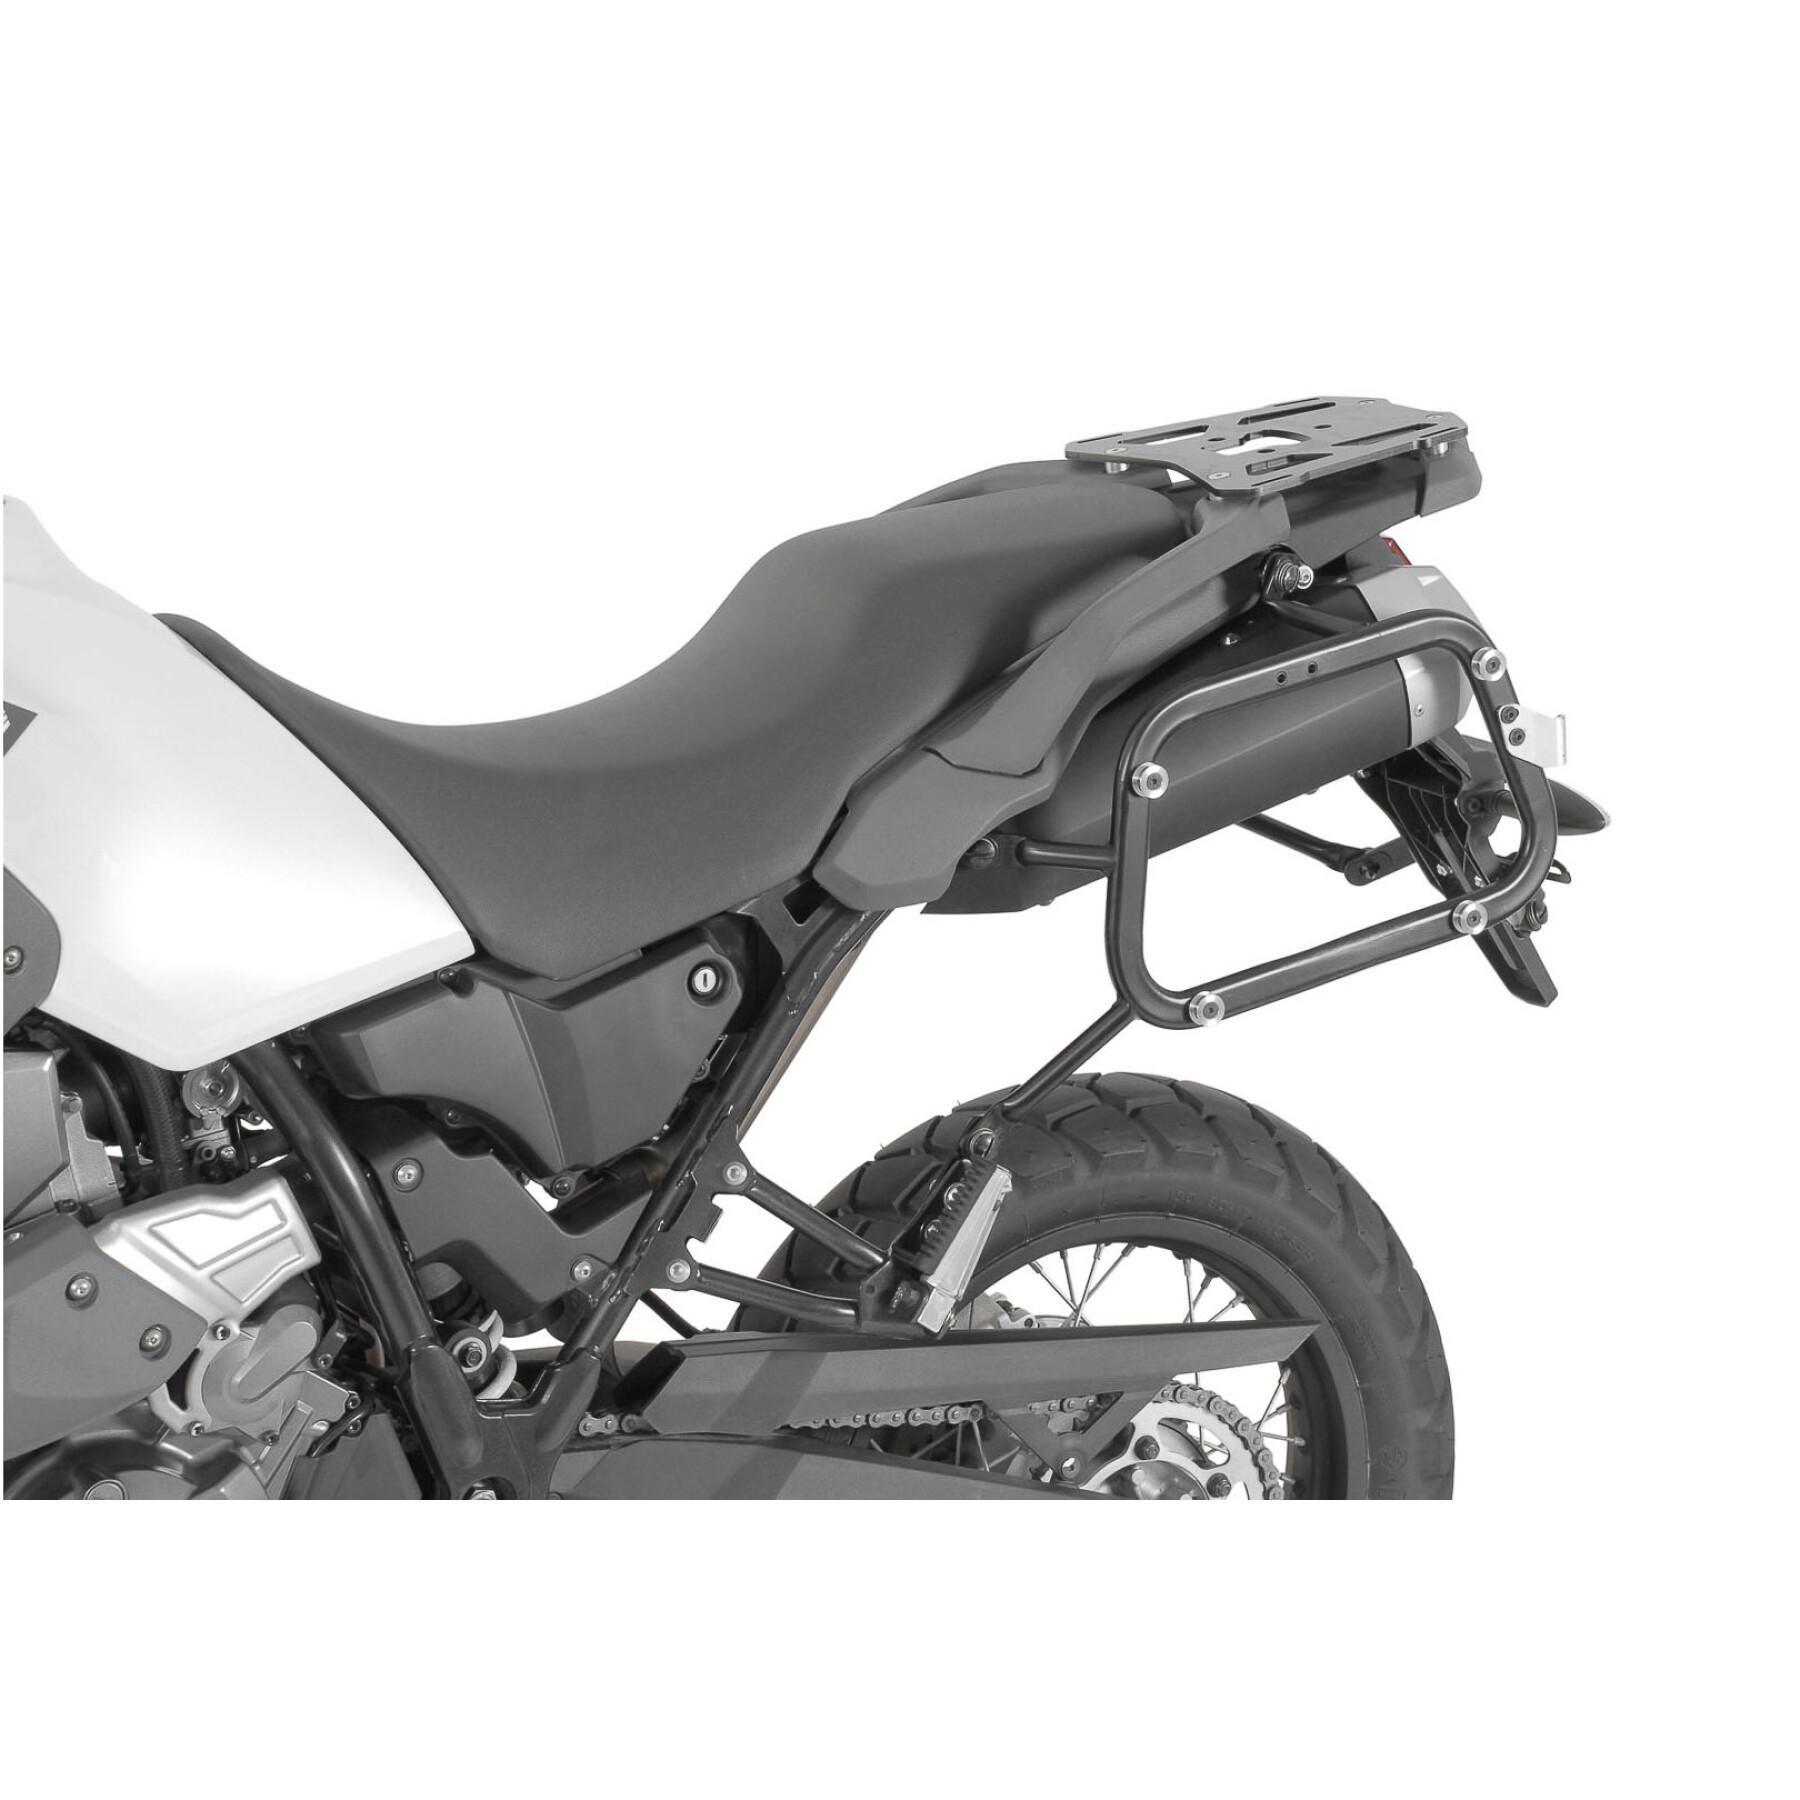 Support valises latérales moto Sw-Motech Evo. Yamaha Xt 660 Z Ténéré (07-16)